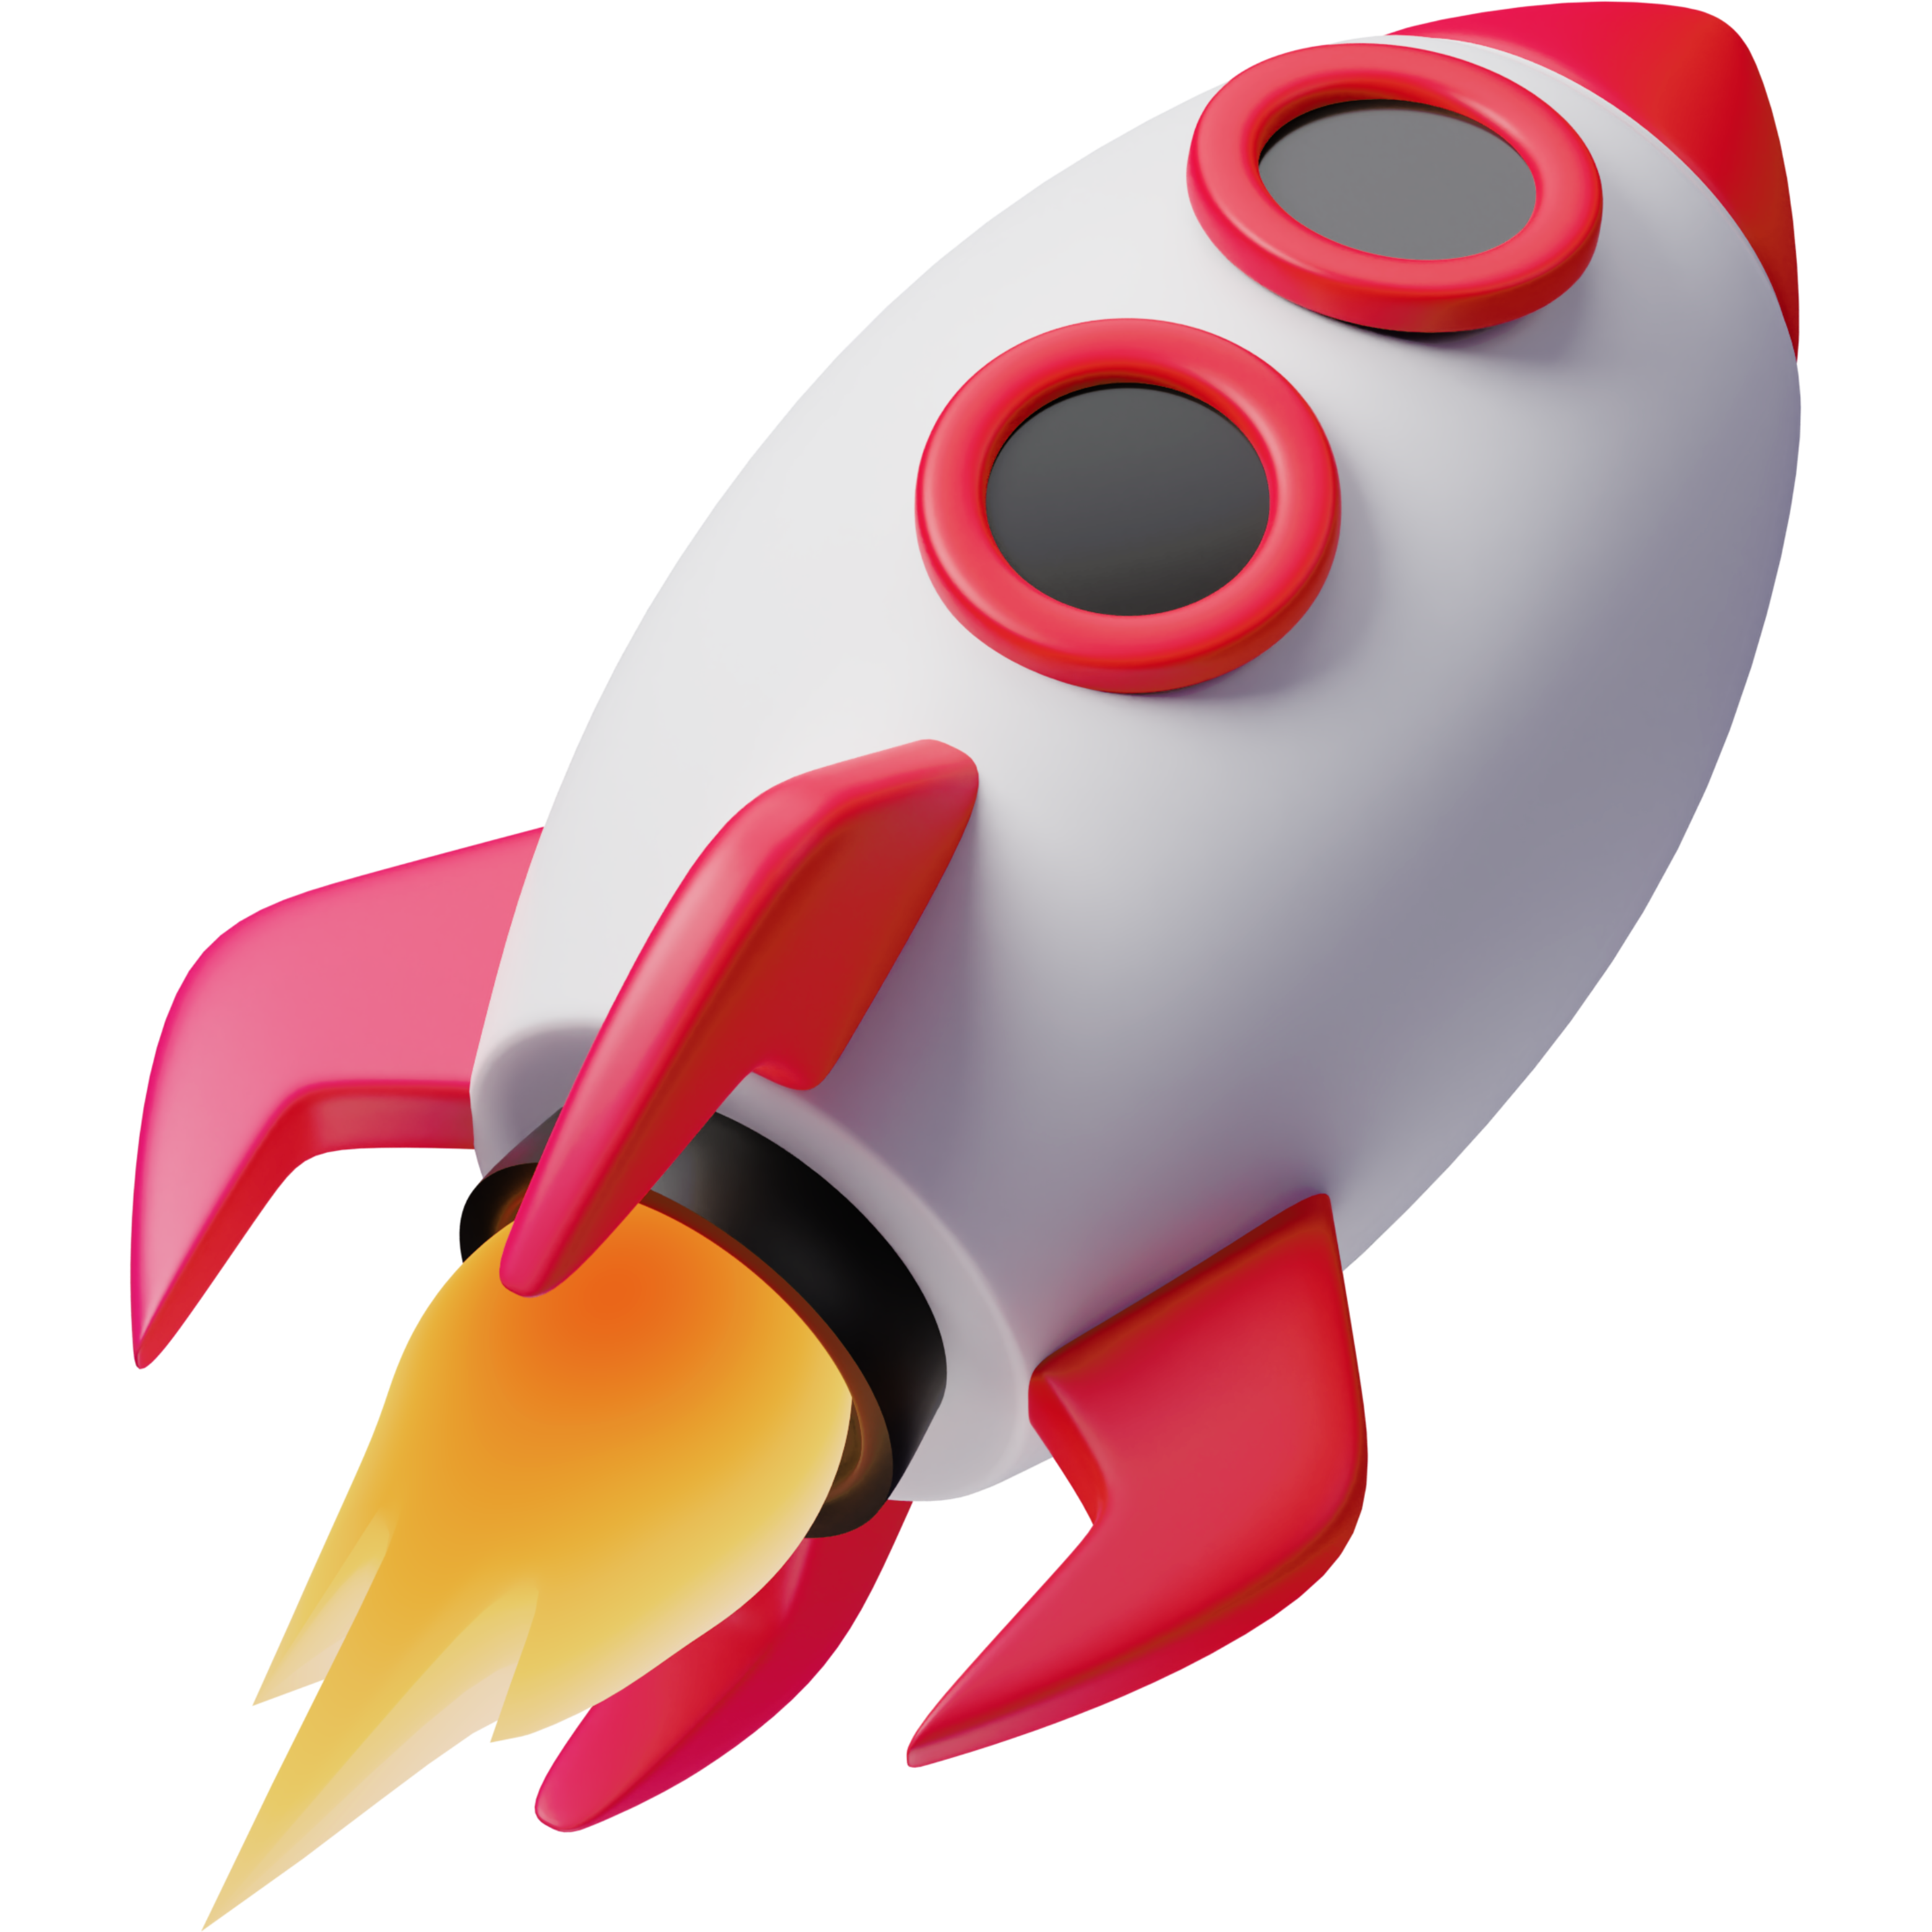 animated rocket illustrating super speed rocket broadband speeds